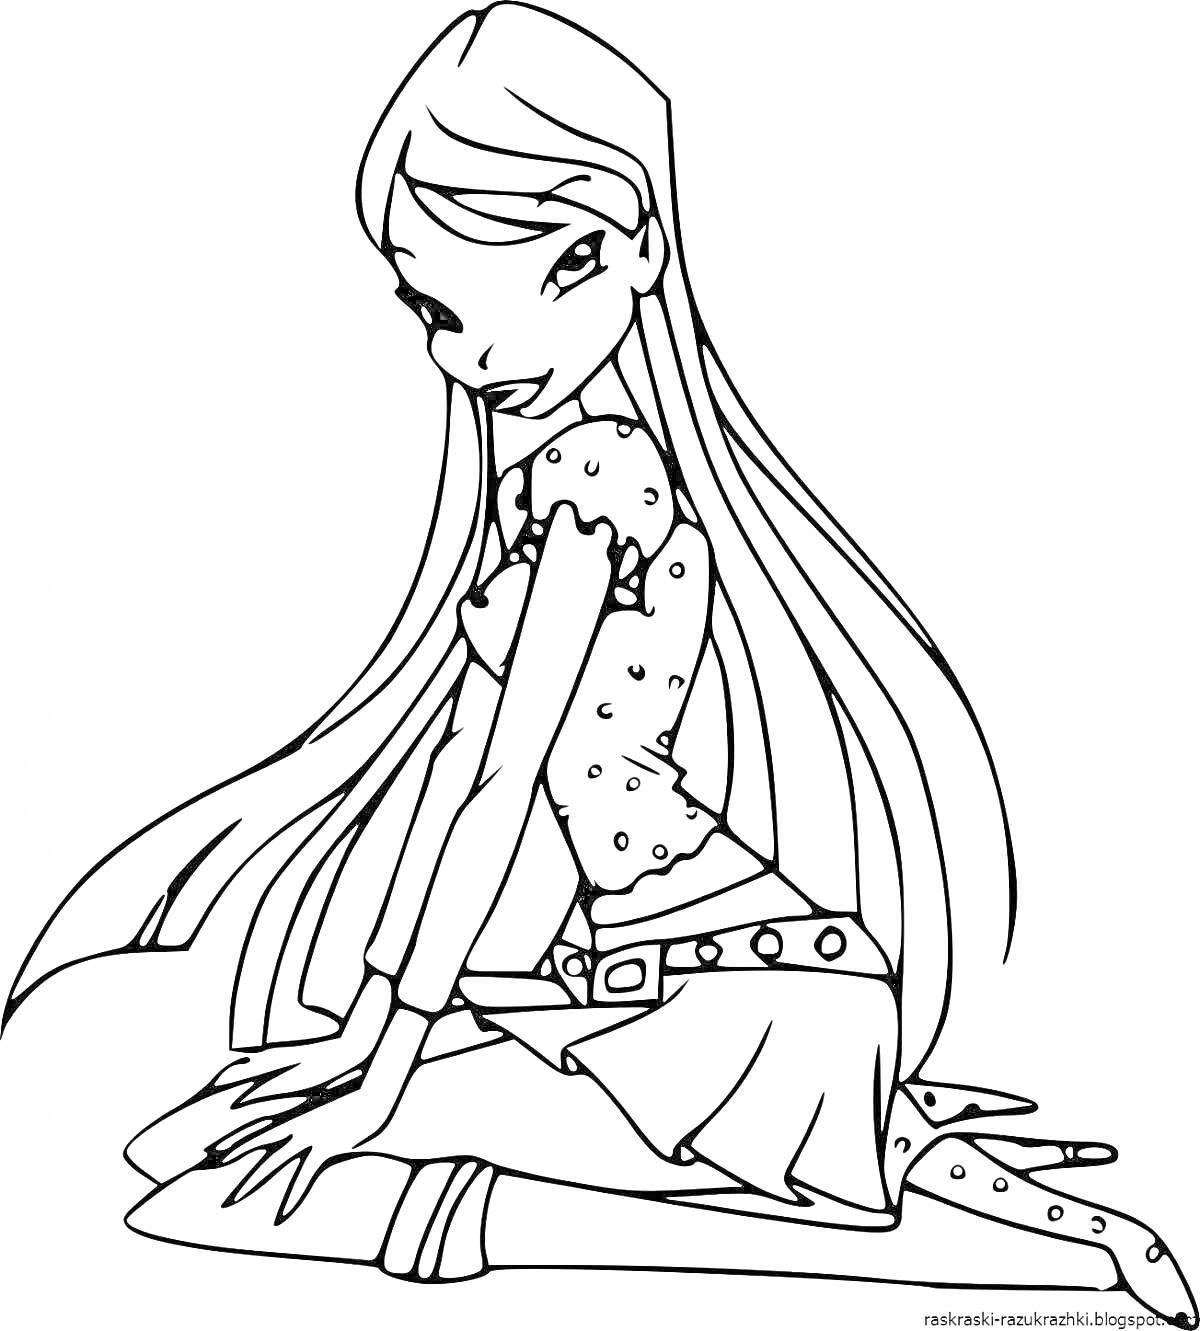 Раскраска Девушка с длинными волосами, сидящая на коленях, в топе и юбке, держащая плюшевую игрушку